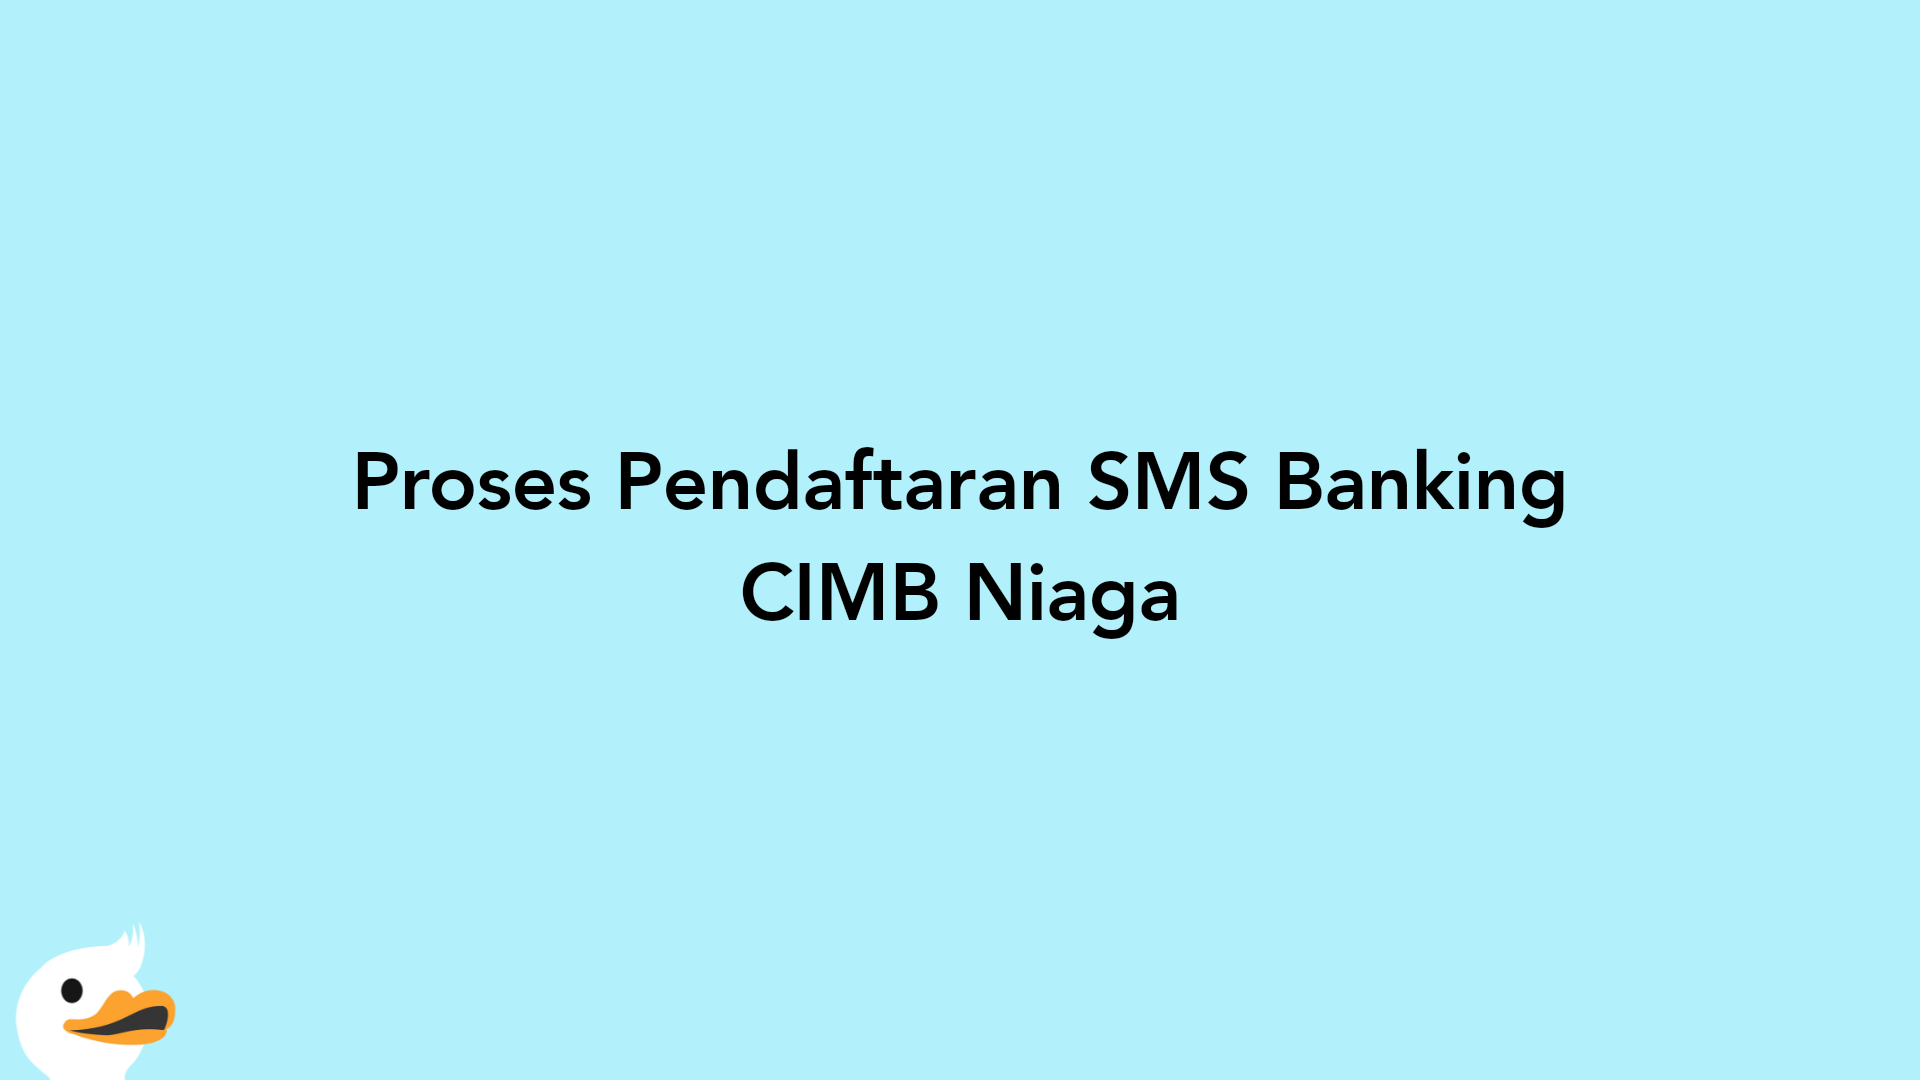 Proses Pendaftaran SMS Banking CIMB Niaga